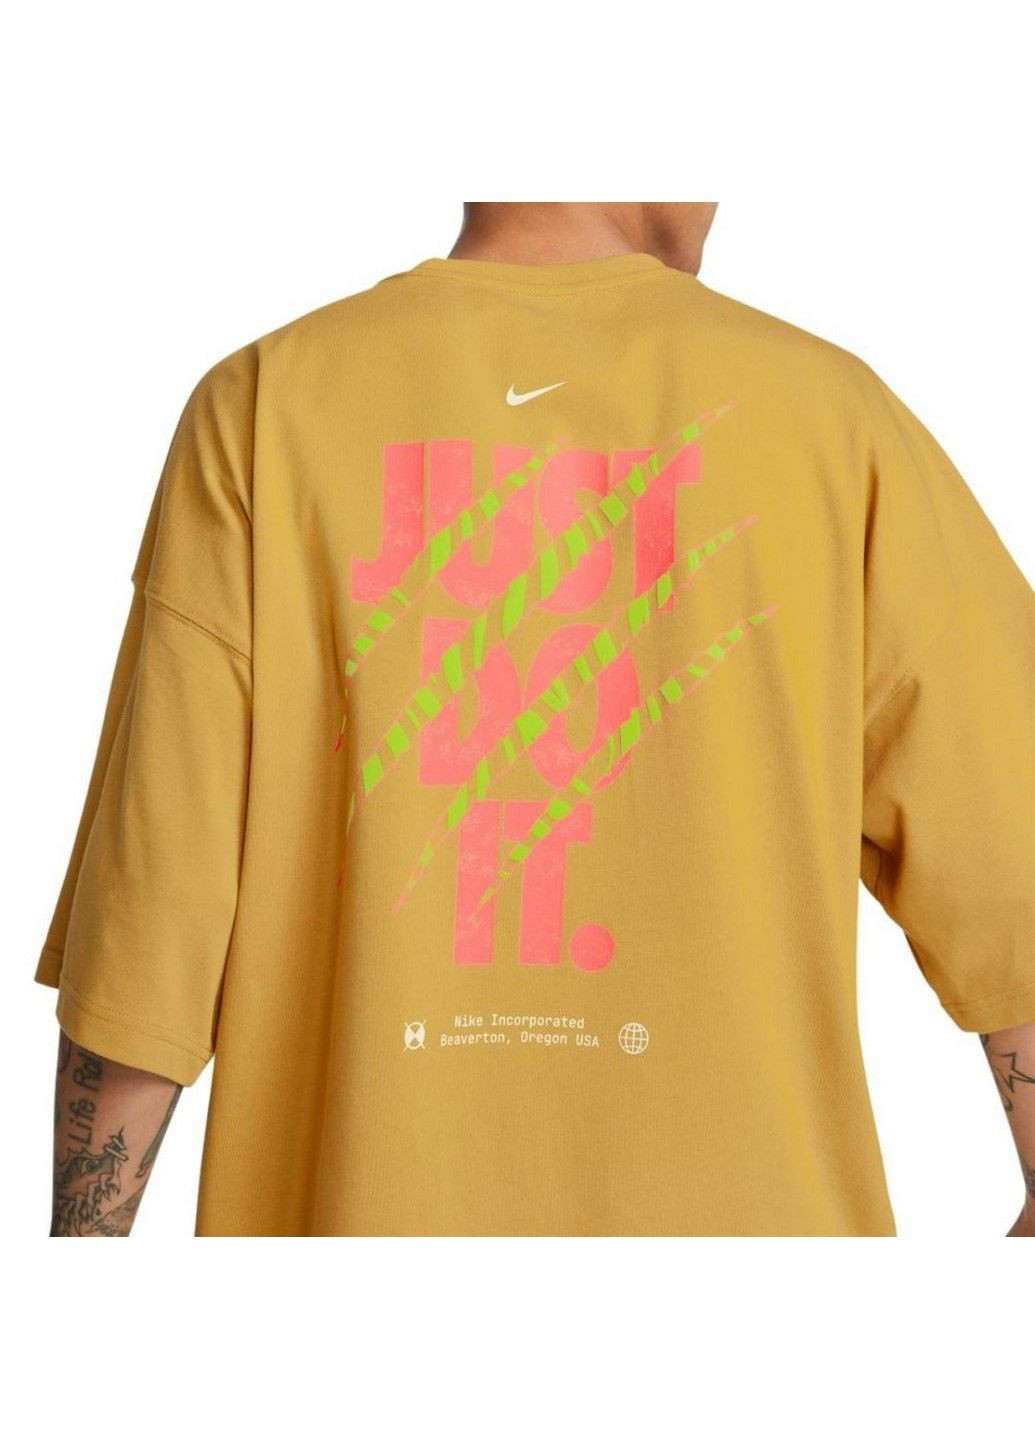 Желтая футболка m nsw tee os brandriffs lbr fb9817-725 Nike